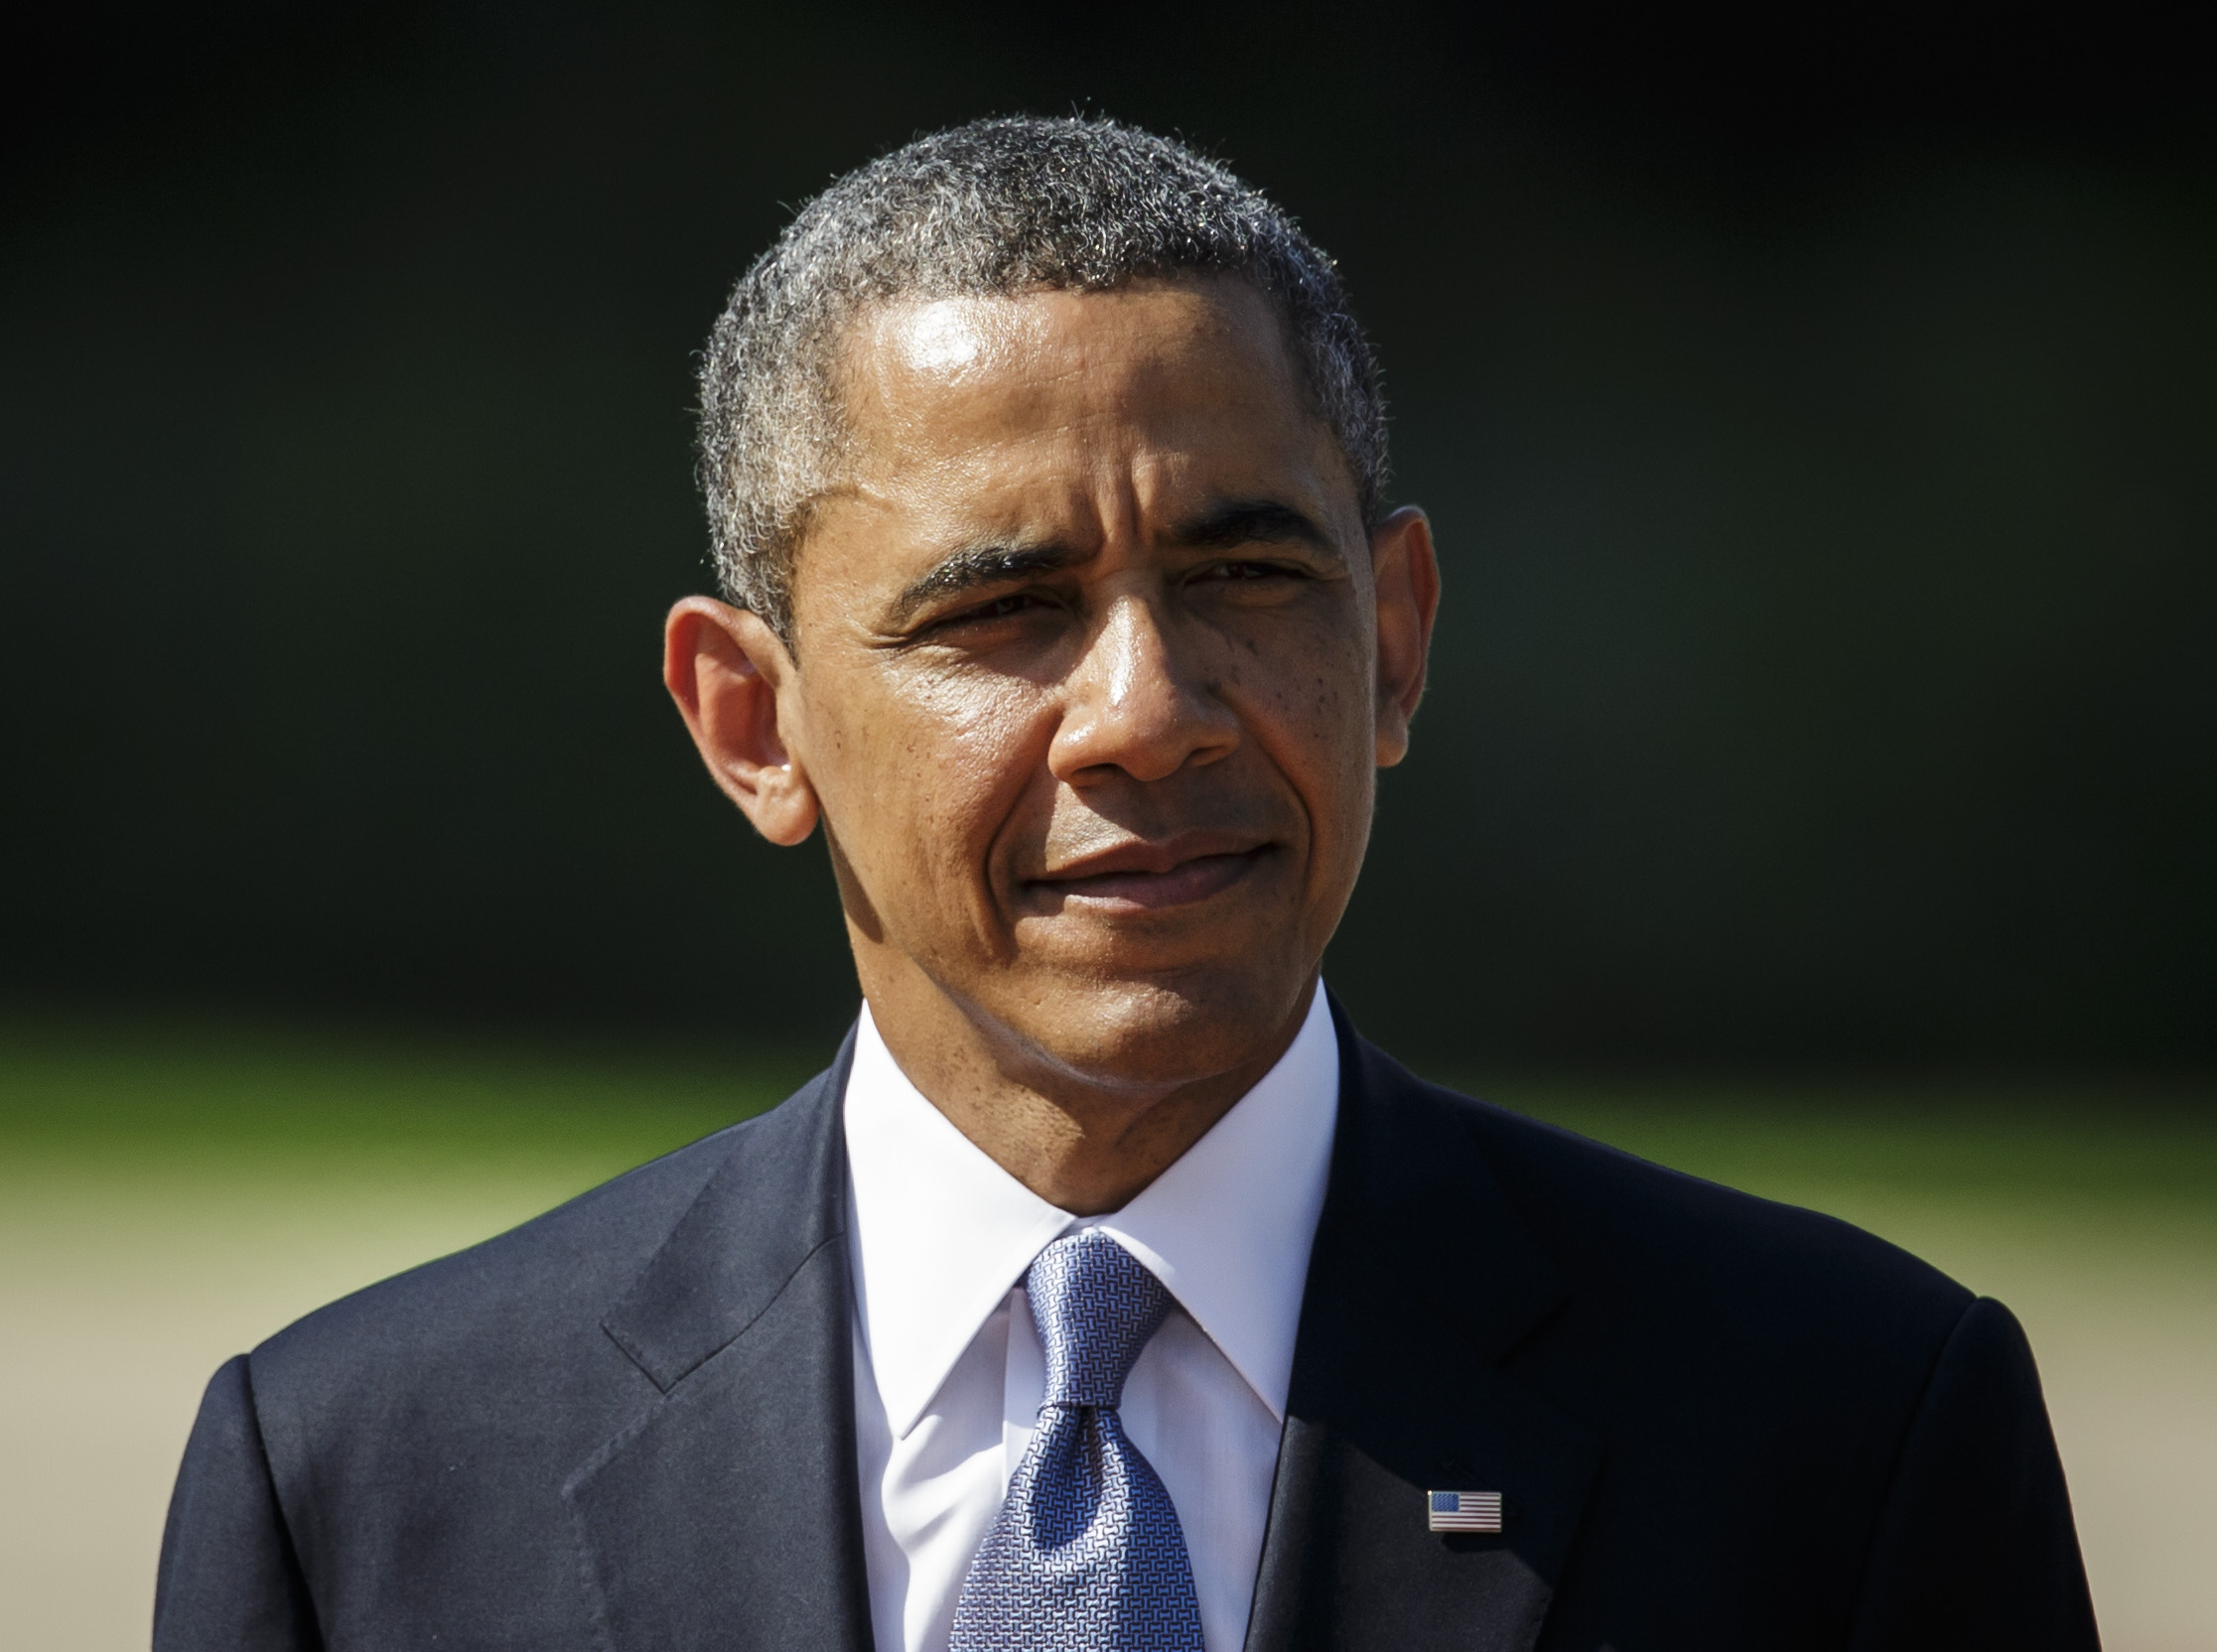 Der ehemalige US-Präsident Barack Obama bei einem Besuch in Berlin im Juni 2013